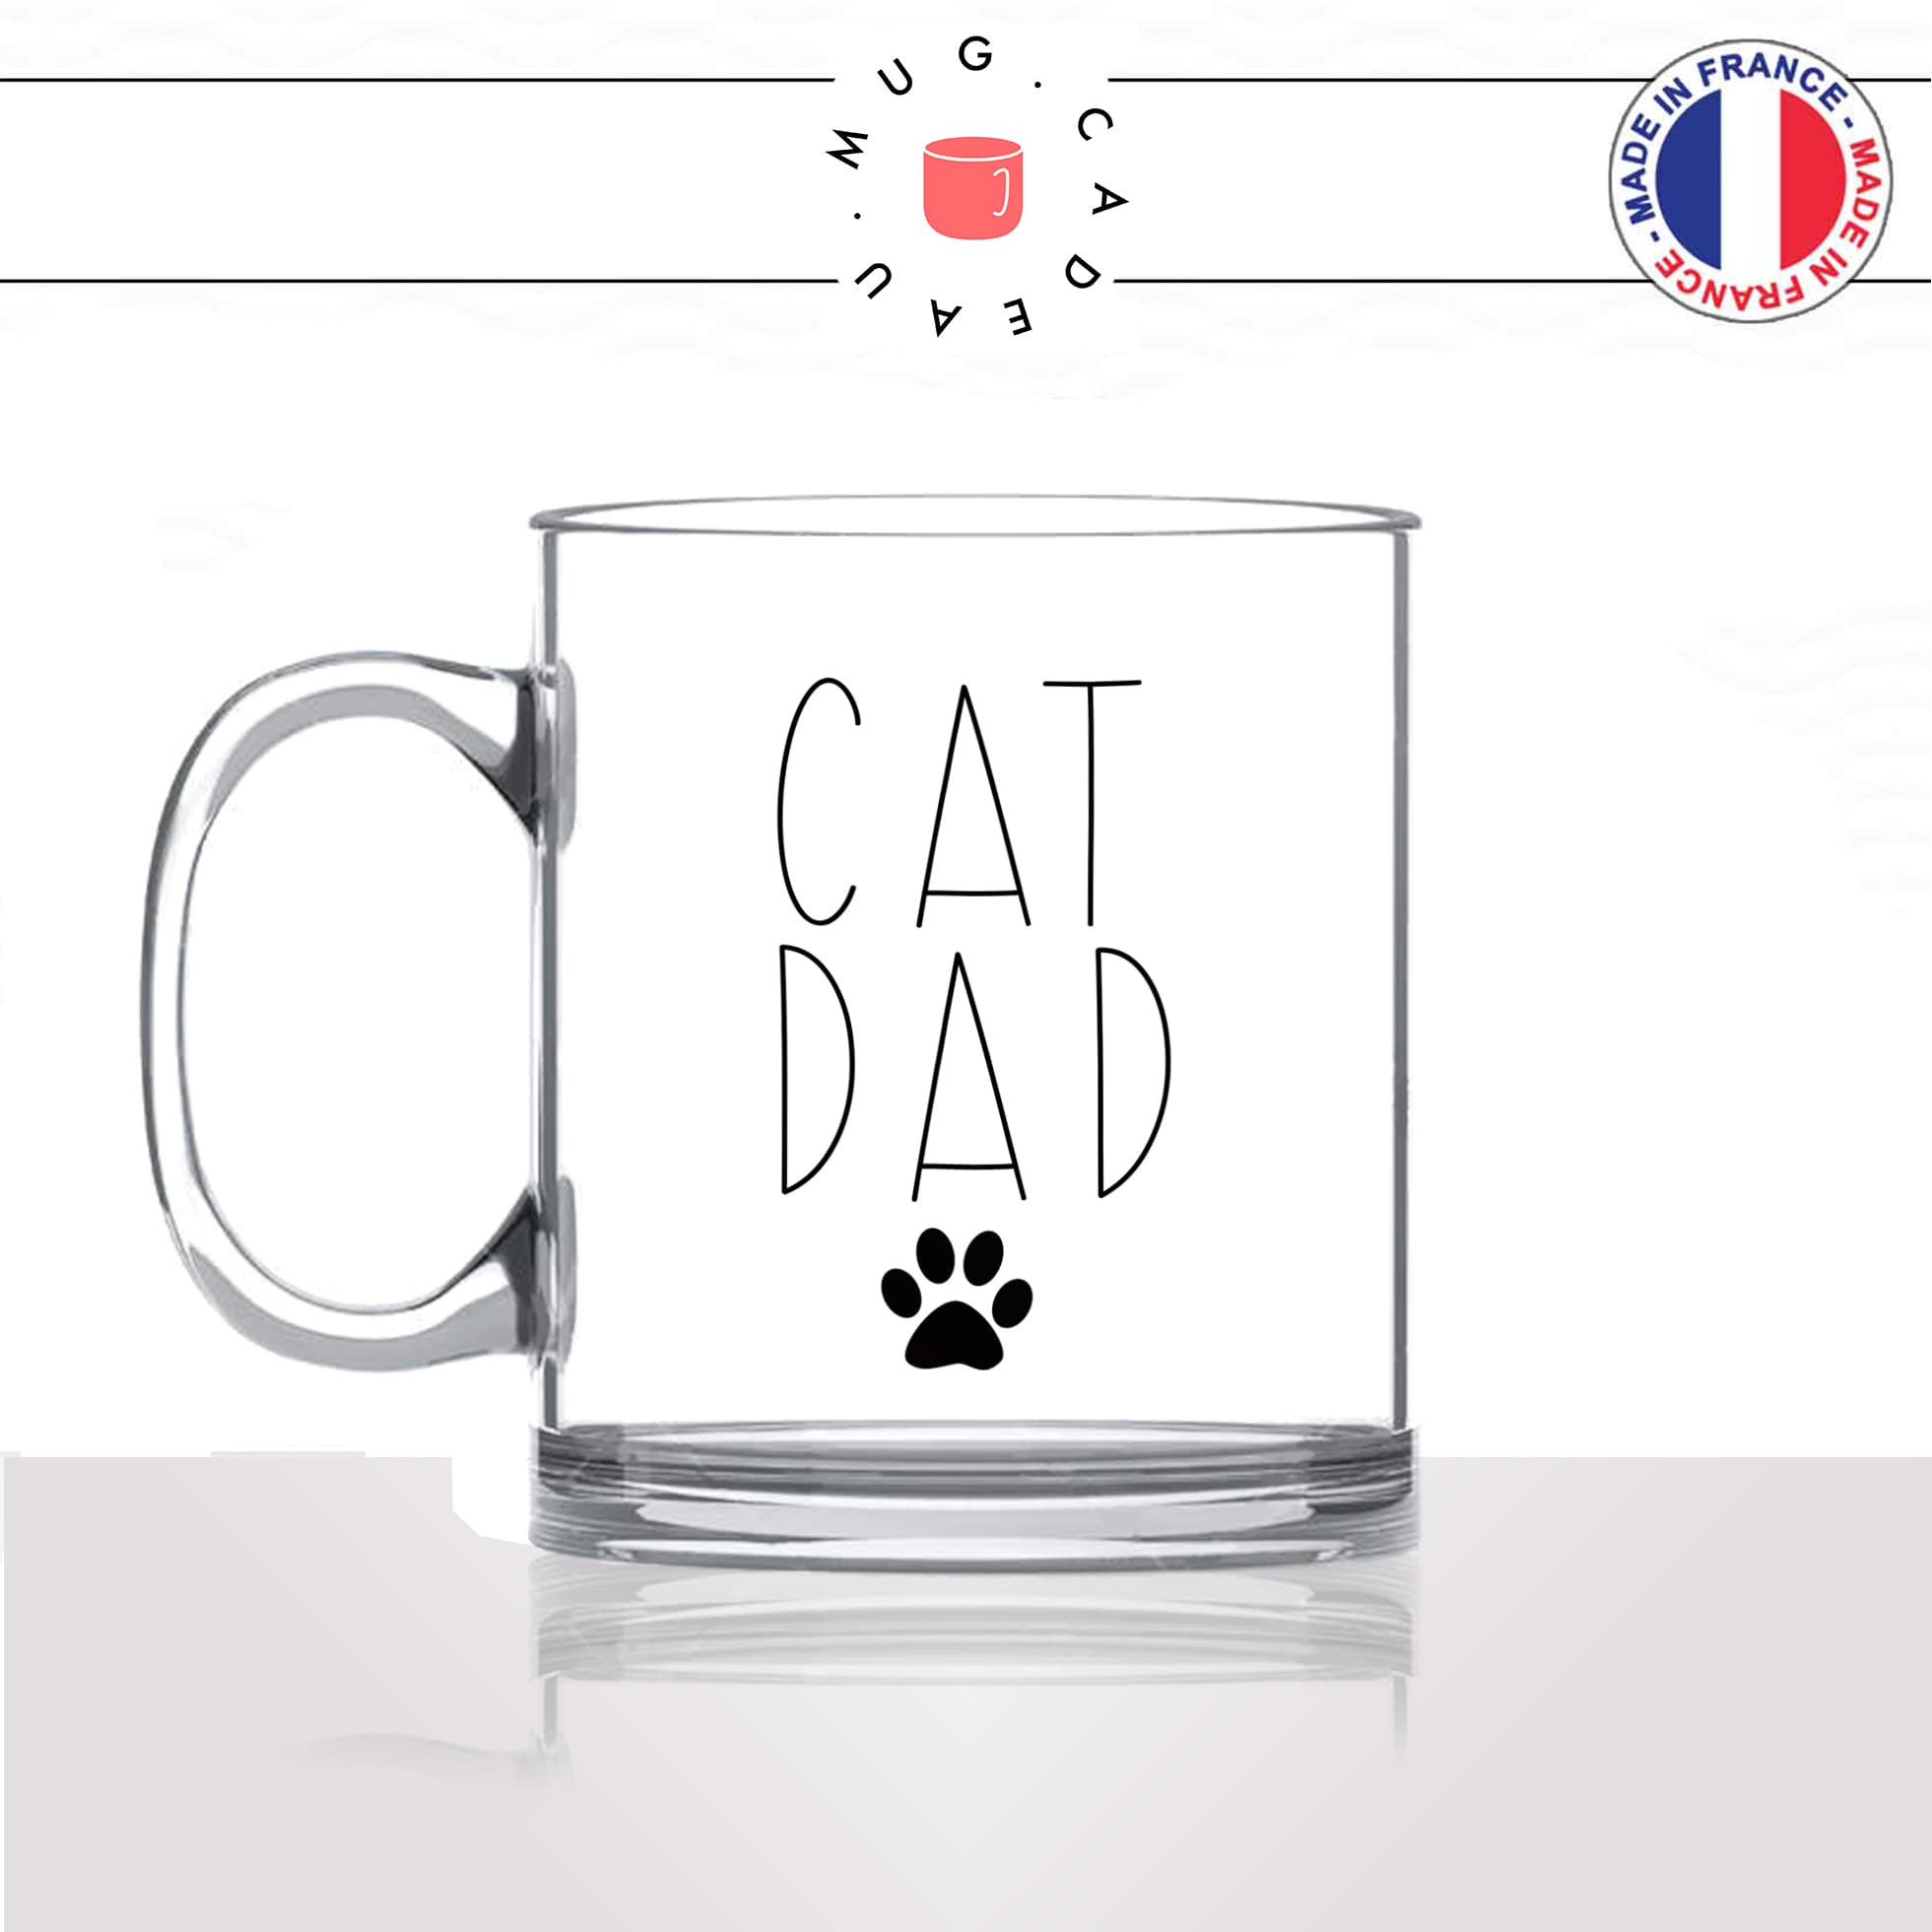 mug-tasse-en-verre-transparent-glass-déco-cat-dad-papa-chats-mignon-animal-chaton-dessin-noir-fun-café-thé-idée-cadeau-original-personnalisable-min